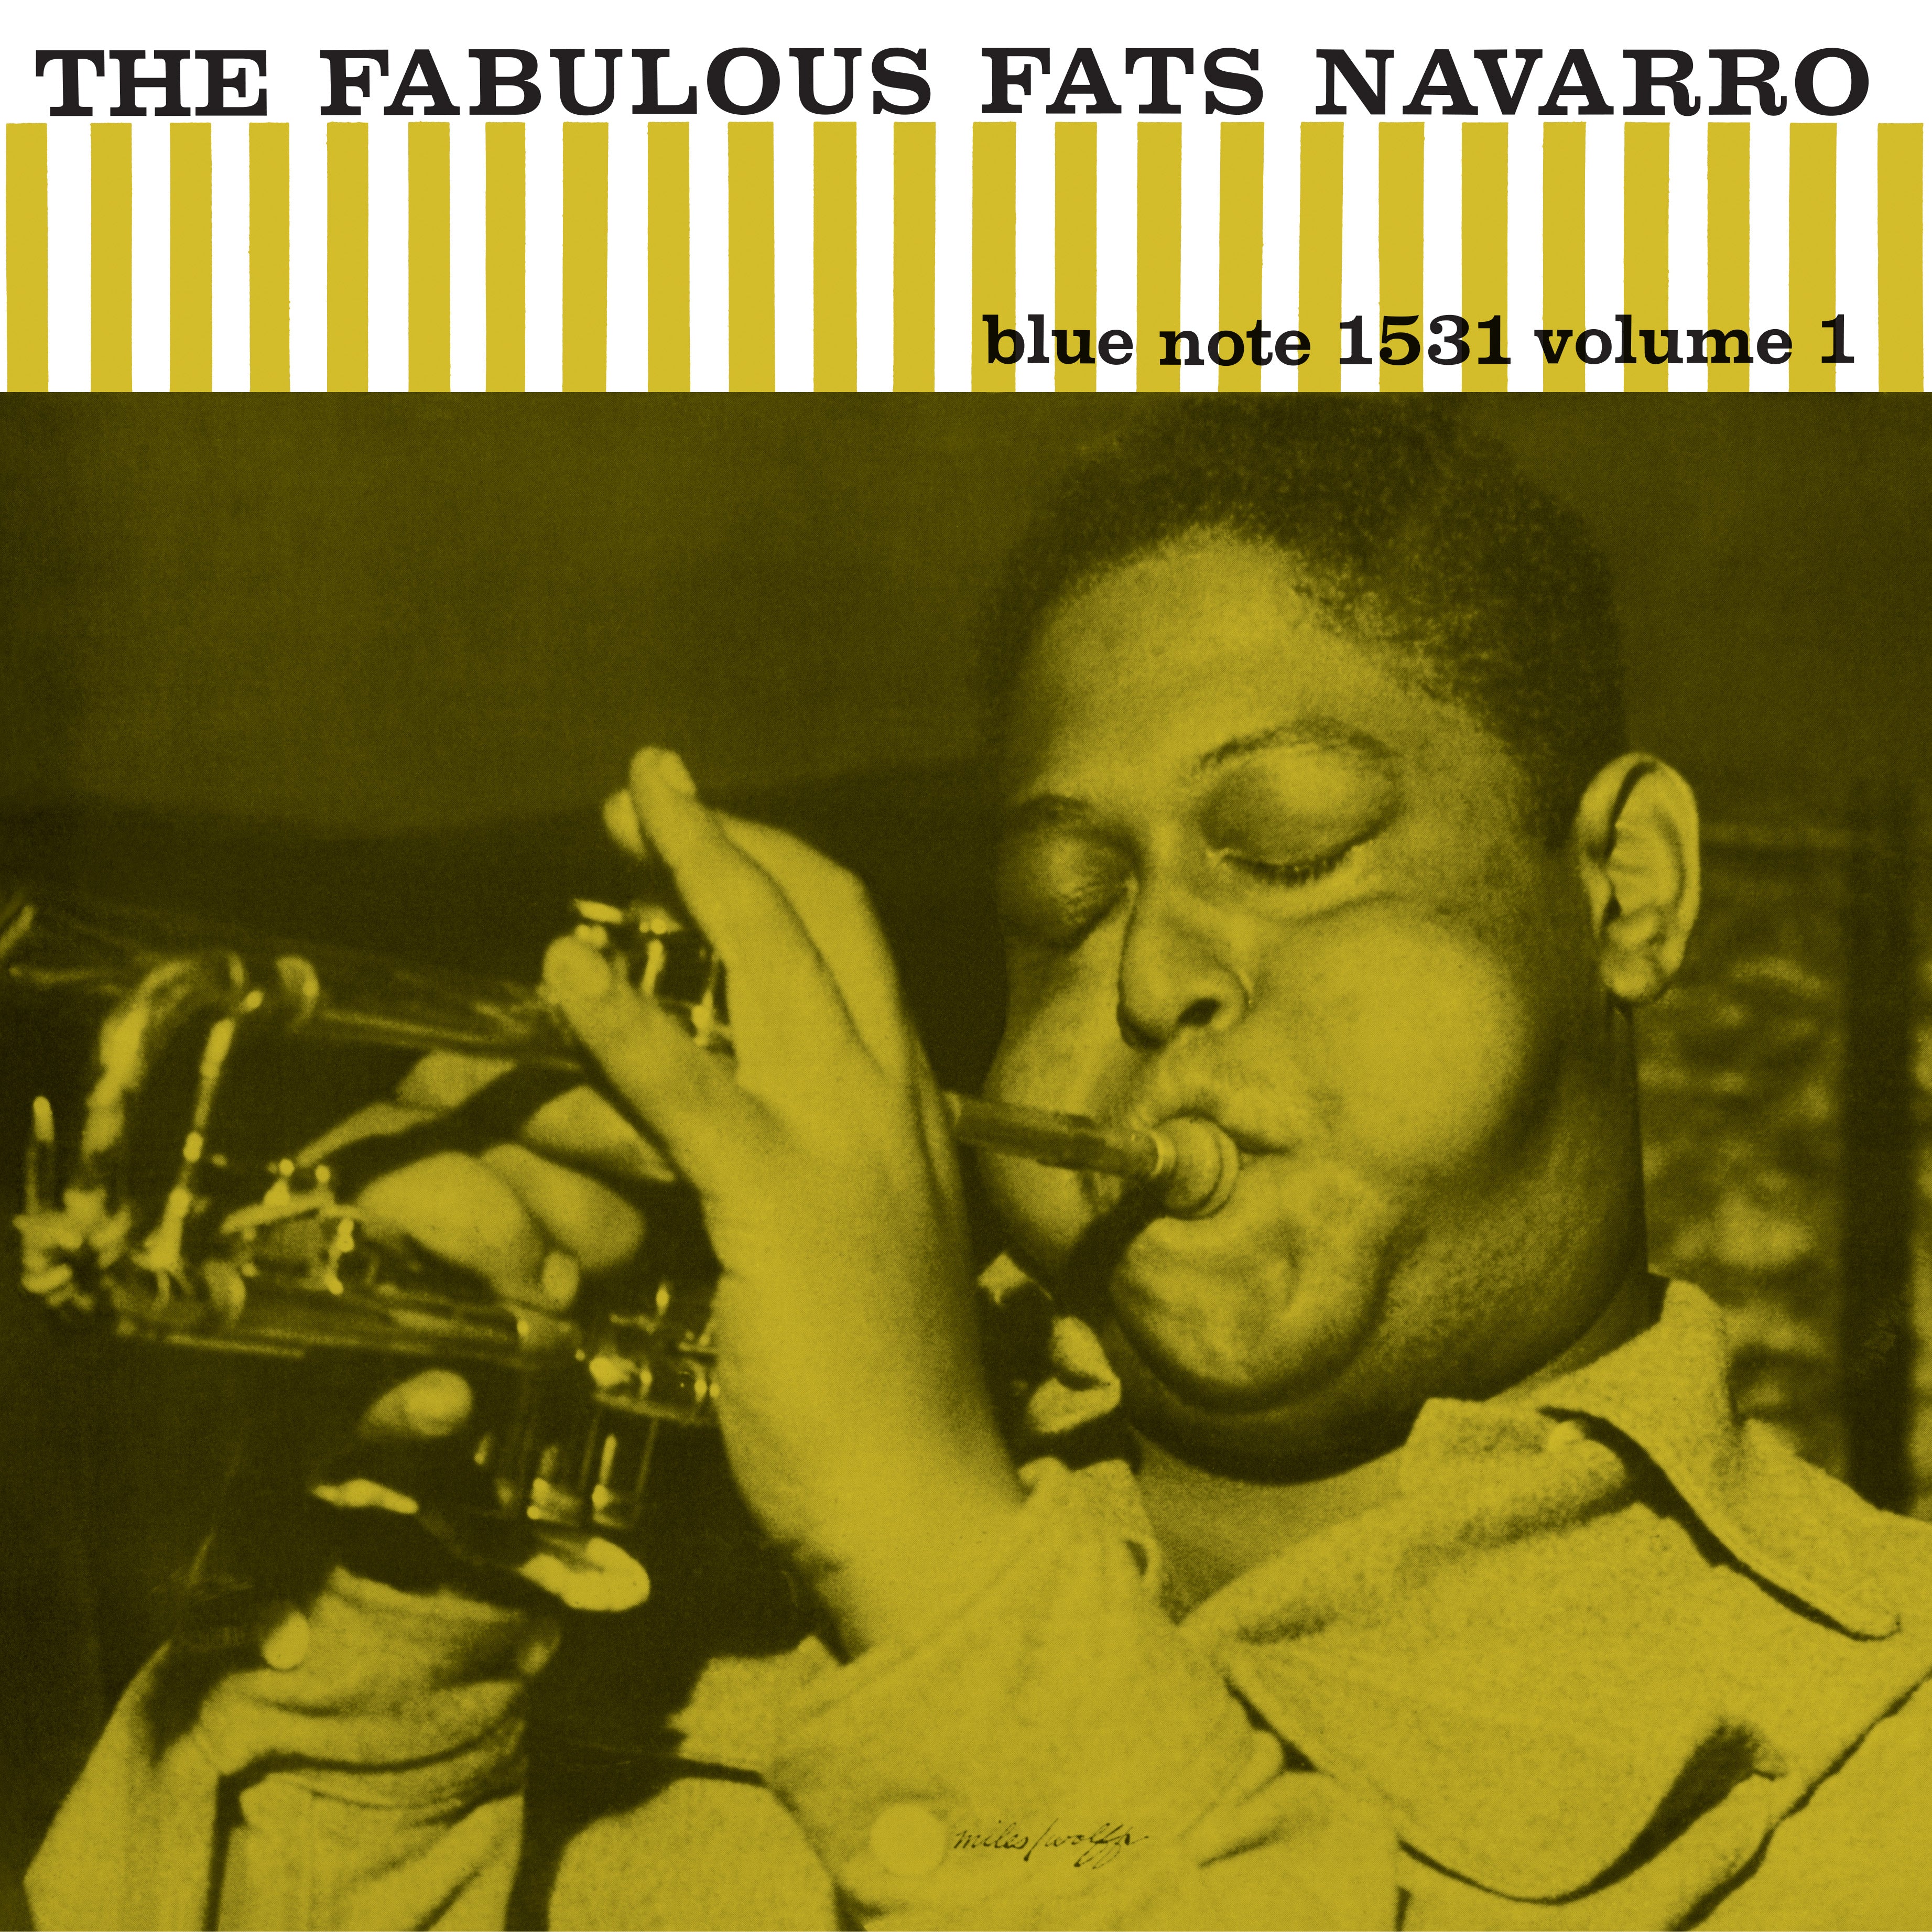 Fats Navarro - The Fabulous Fats Navarro Vol. 1: Vinyl LP